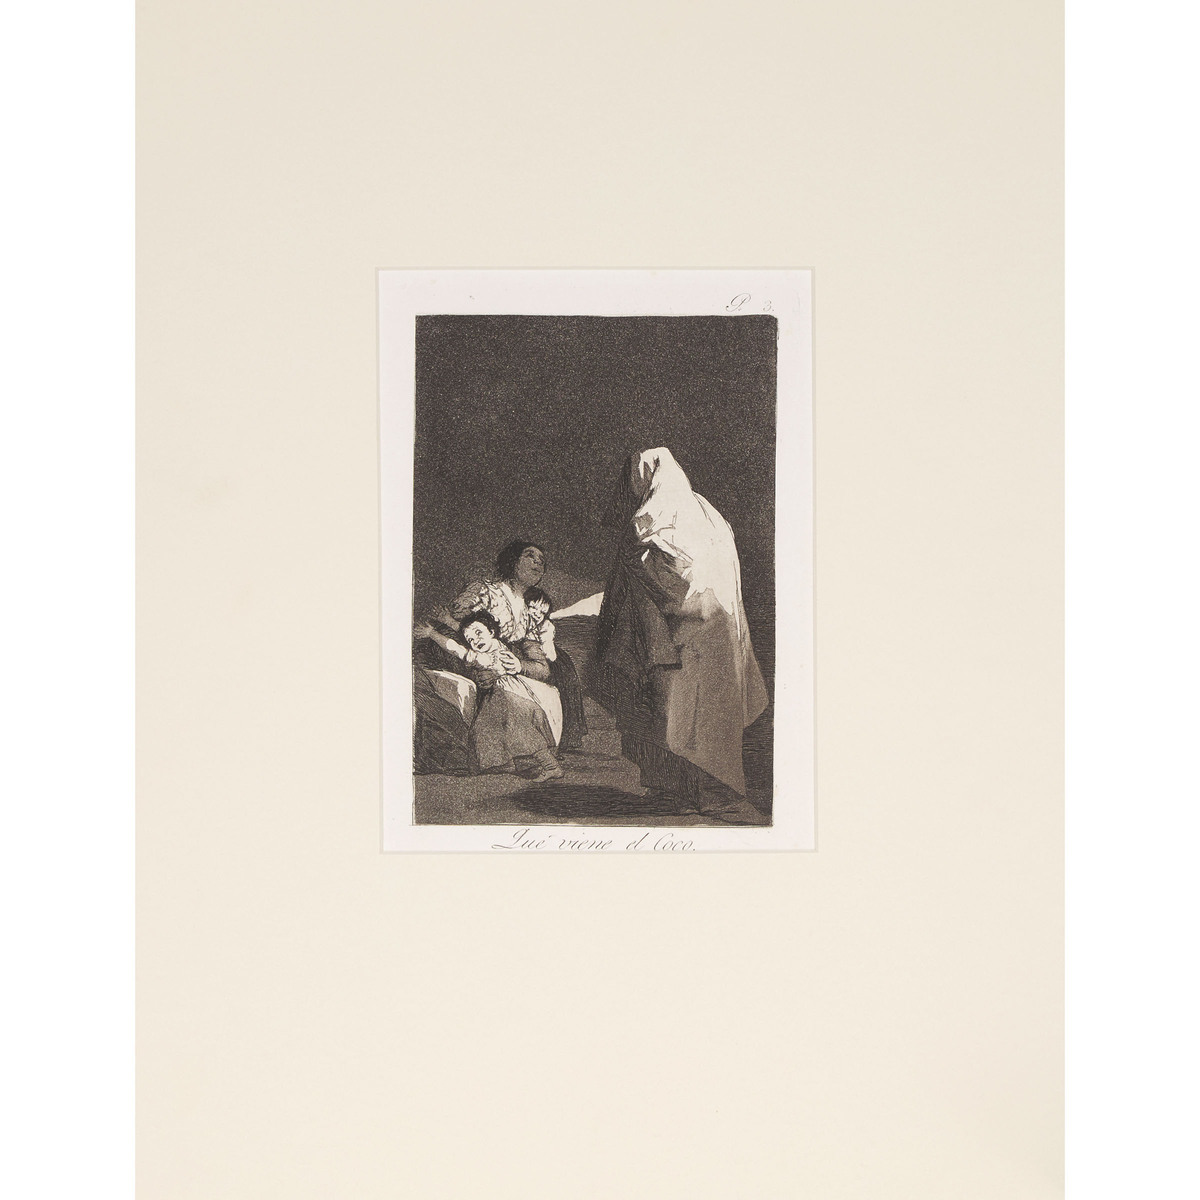 Francisco José de Goya y Lucientes (1746-1828), LOS CAPRICHOS, CA. 1855-1878 [D. 40-111; H. 38-109], - Image 2 of 55